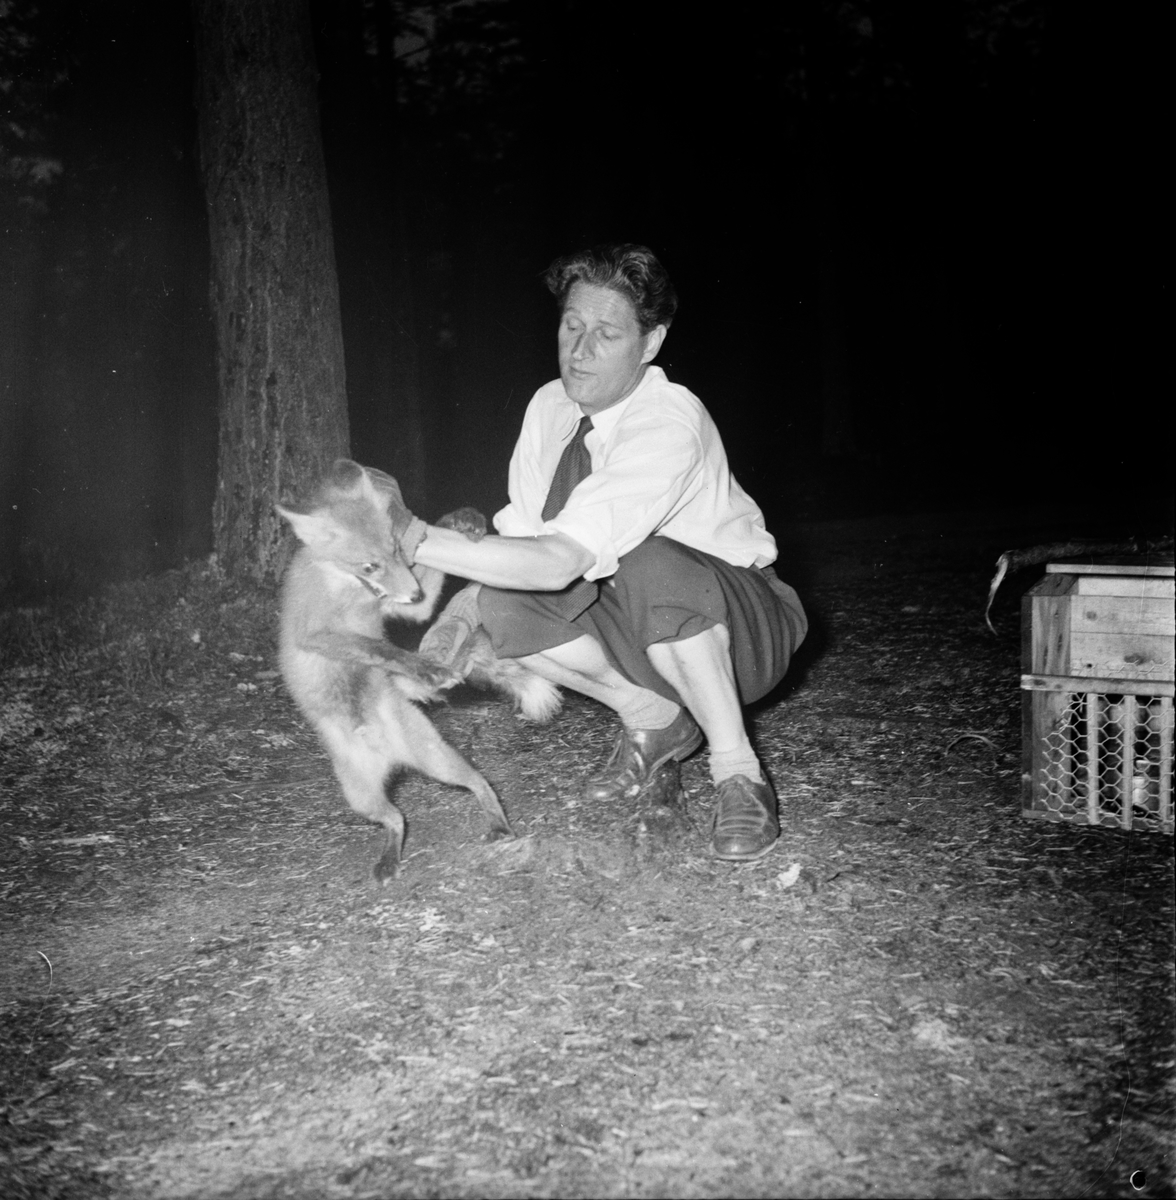 Styrelsen jaktvårdsföreningen i Gävleborg.
1955